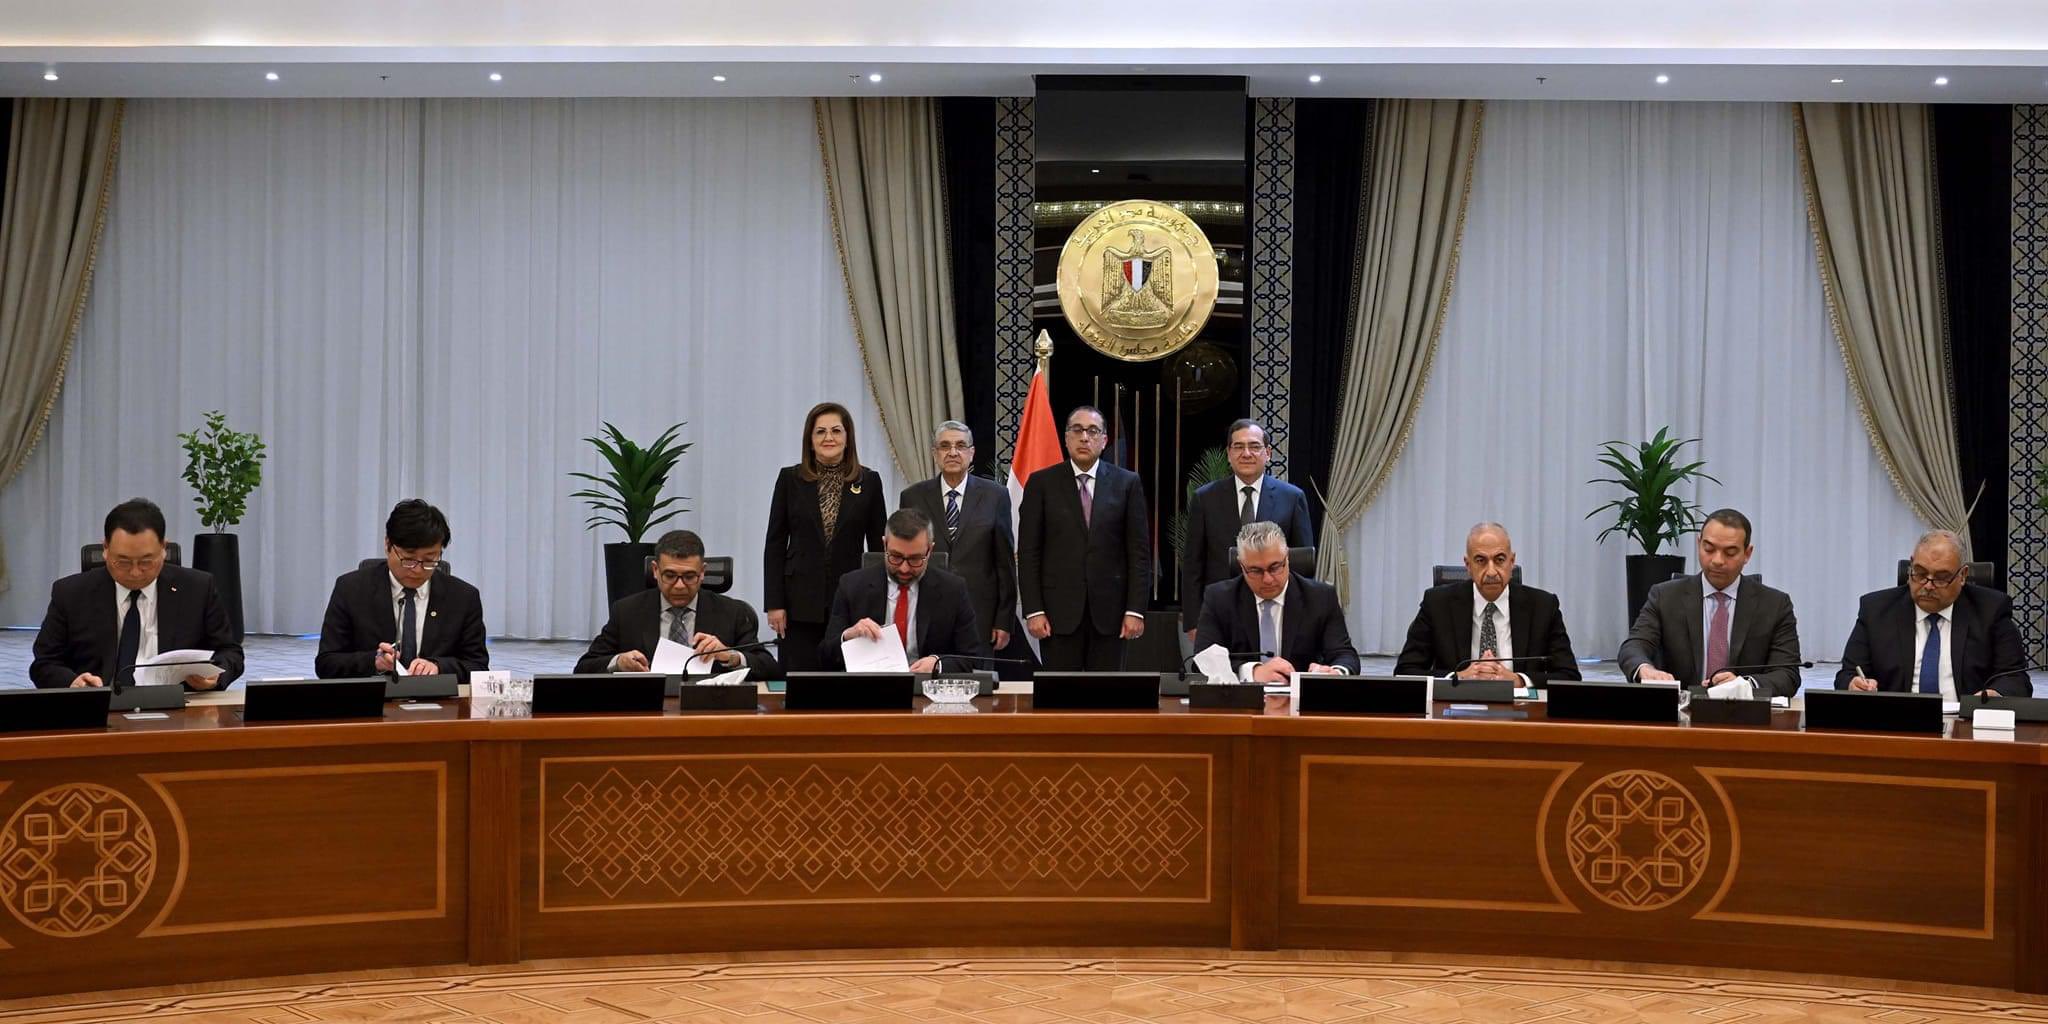 مصر توقع اتفاقيات جديدة بنحو 40 مليار دولار